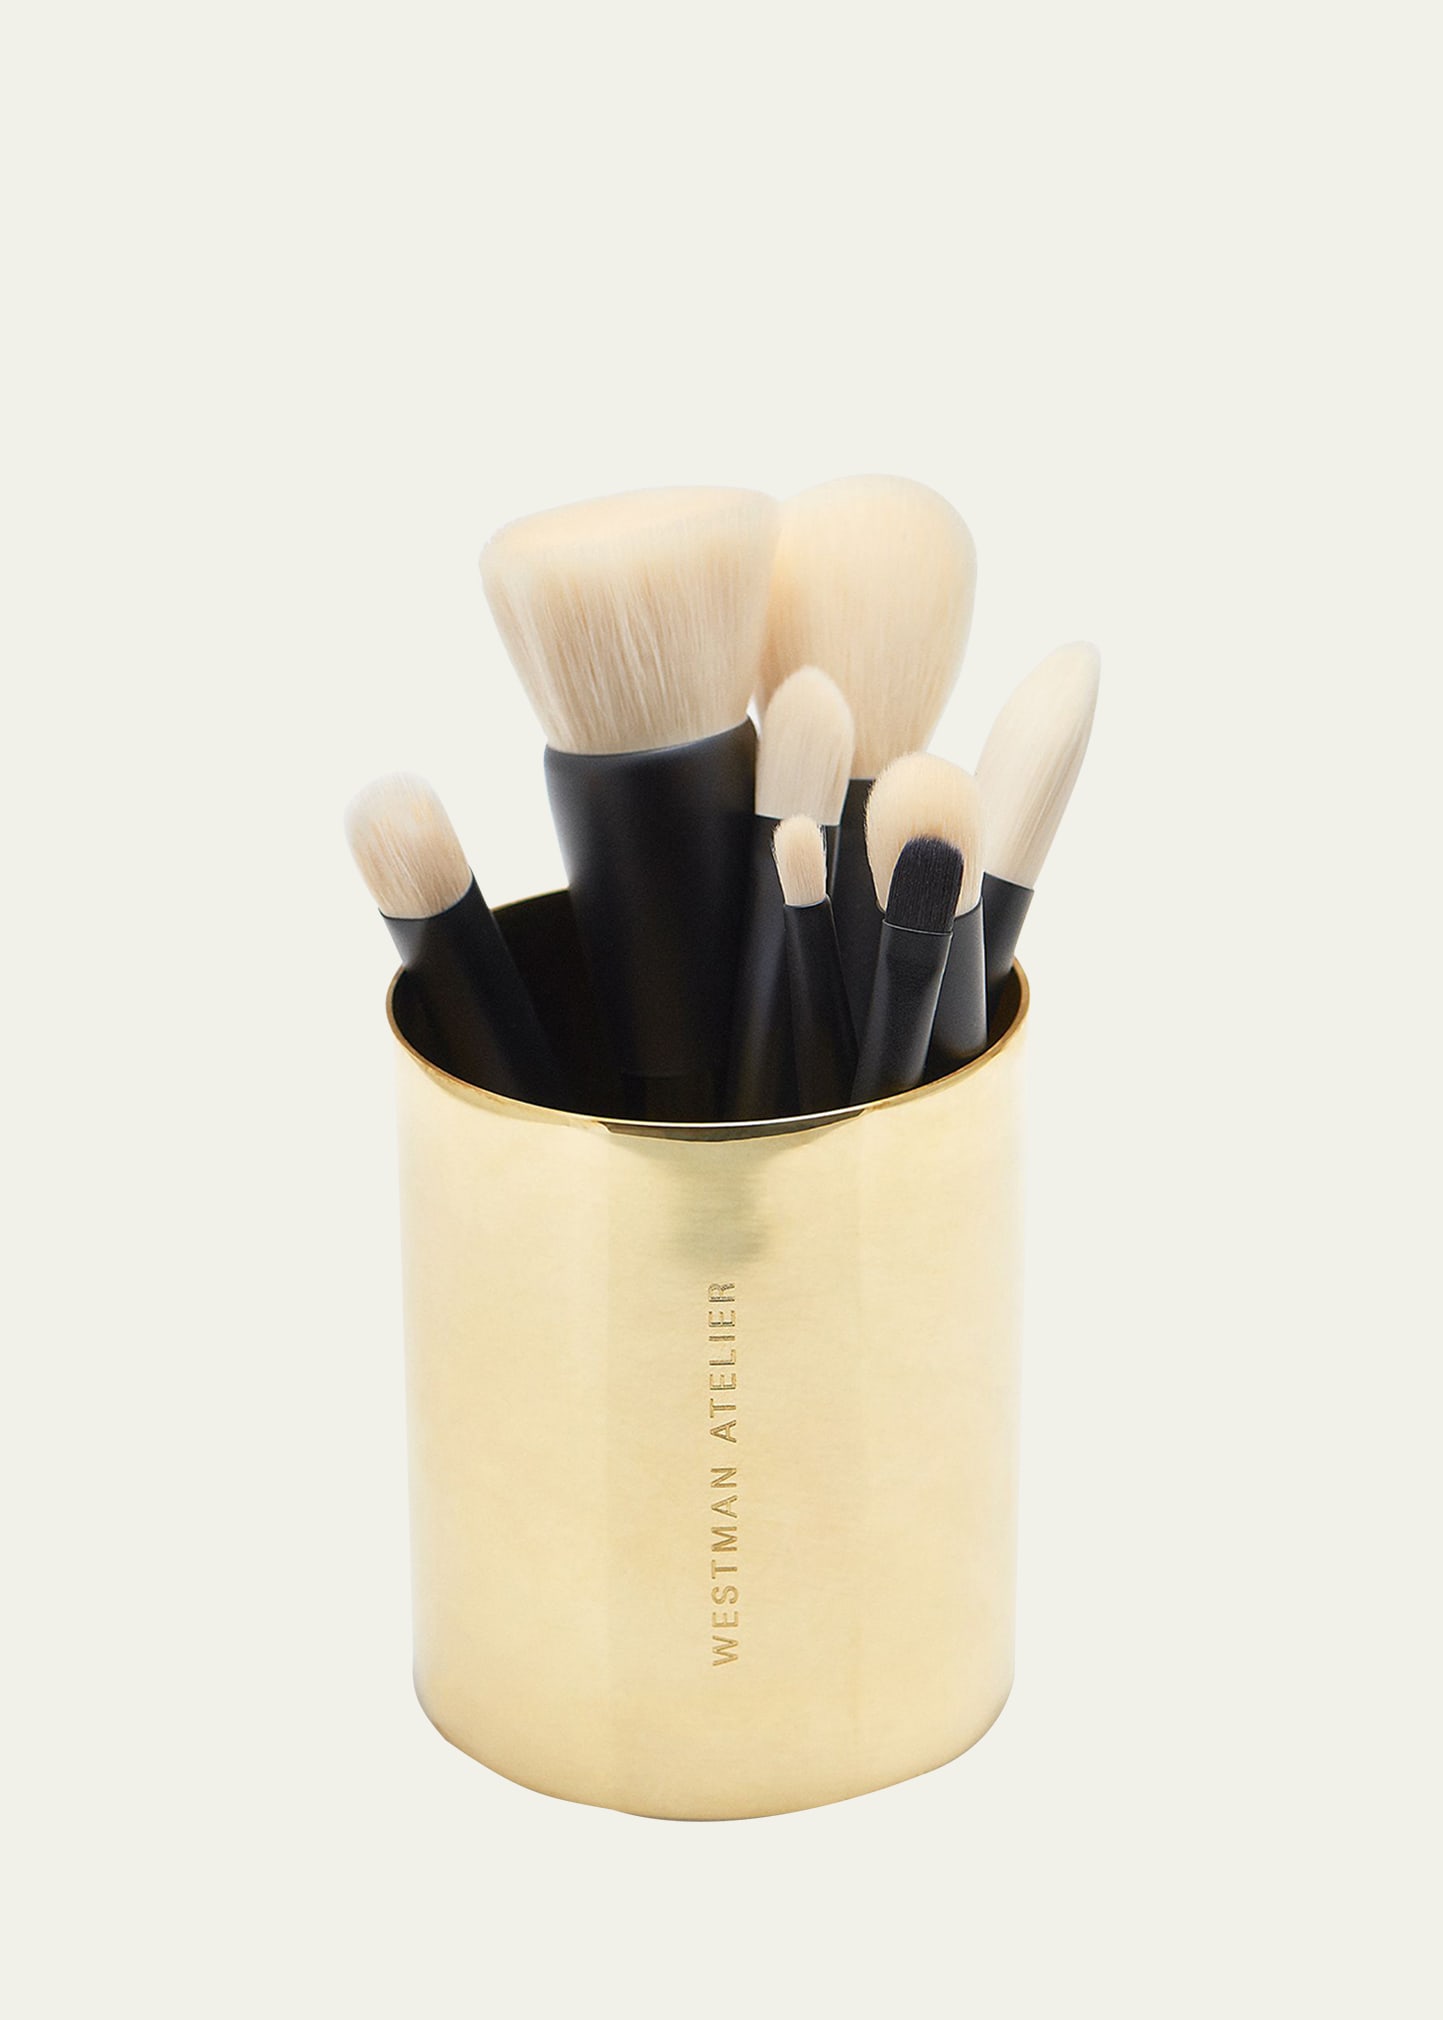 Guld Kuppen Makeup Brush Holder Cup - Gold | Bergdorf Goodman